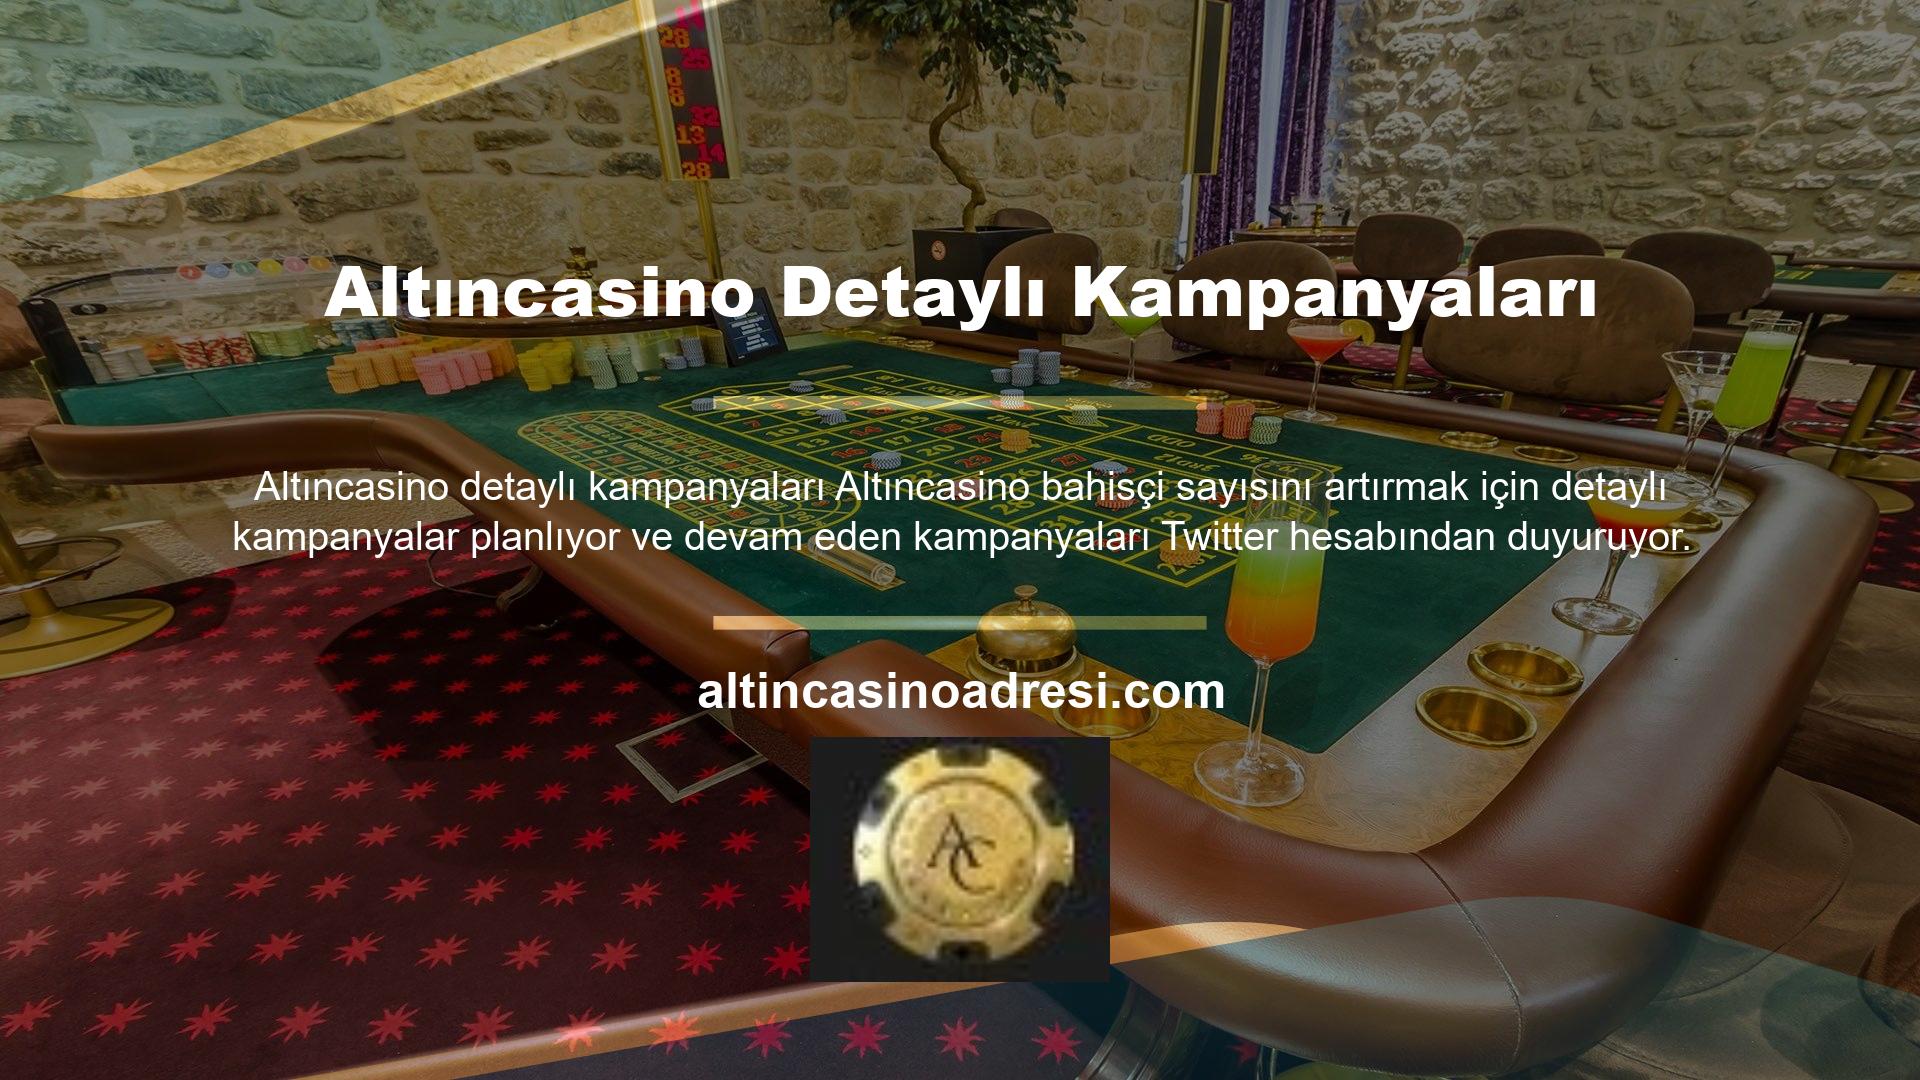 Altıncasino, kullanıcılarına çok çeşitli fırsatlar sunması nedeniyle başta Türkiye olmak üzere birçok ülkede popülerdir